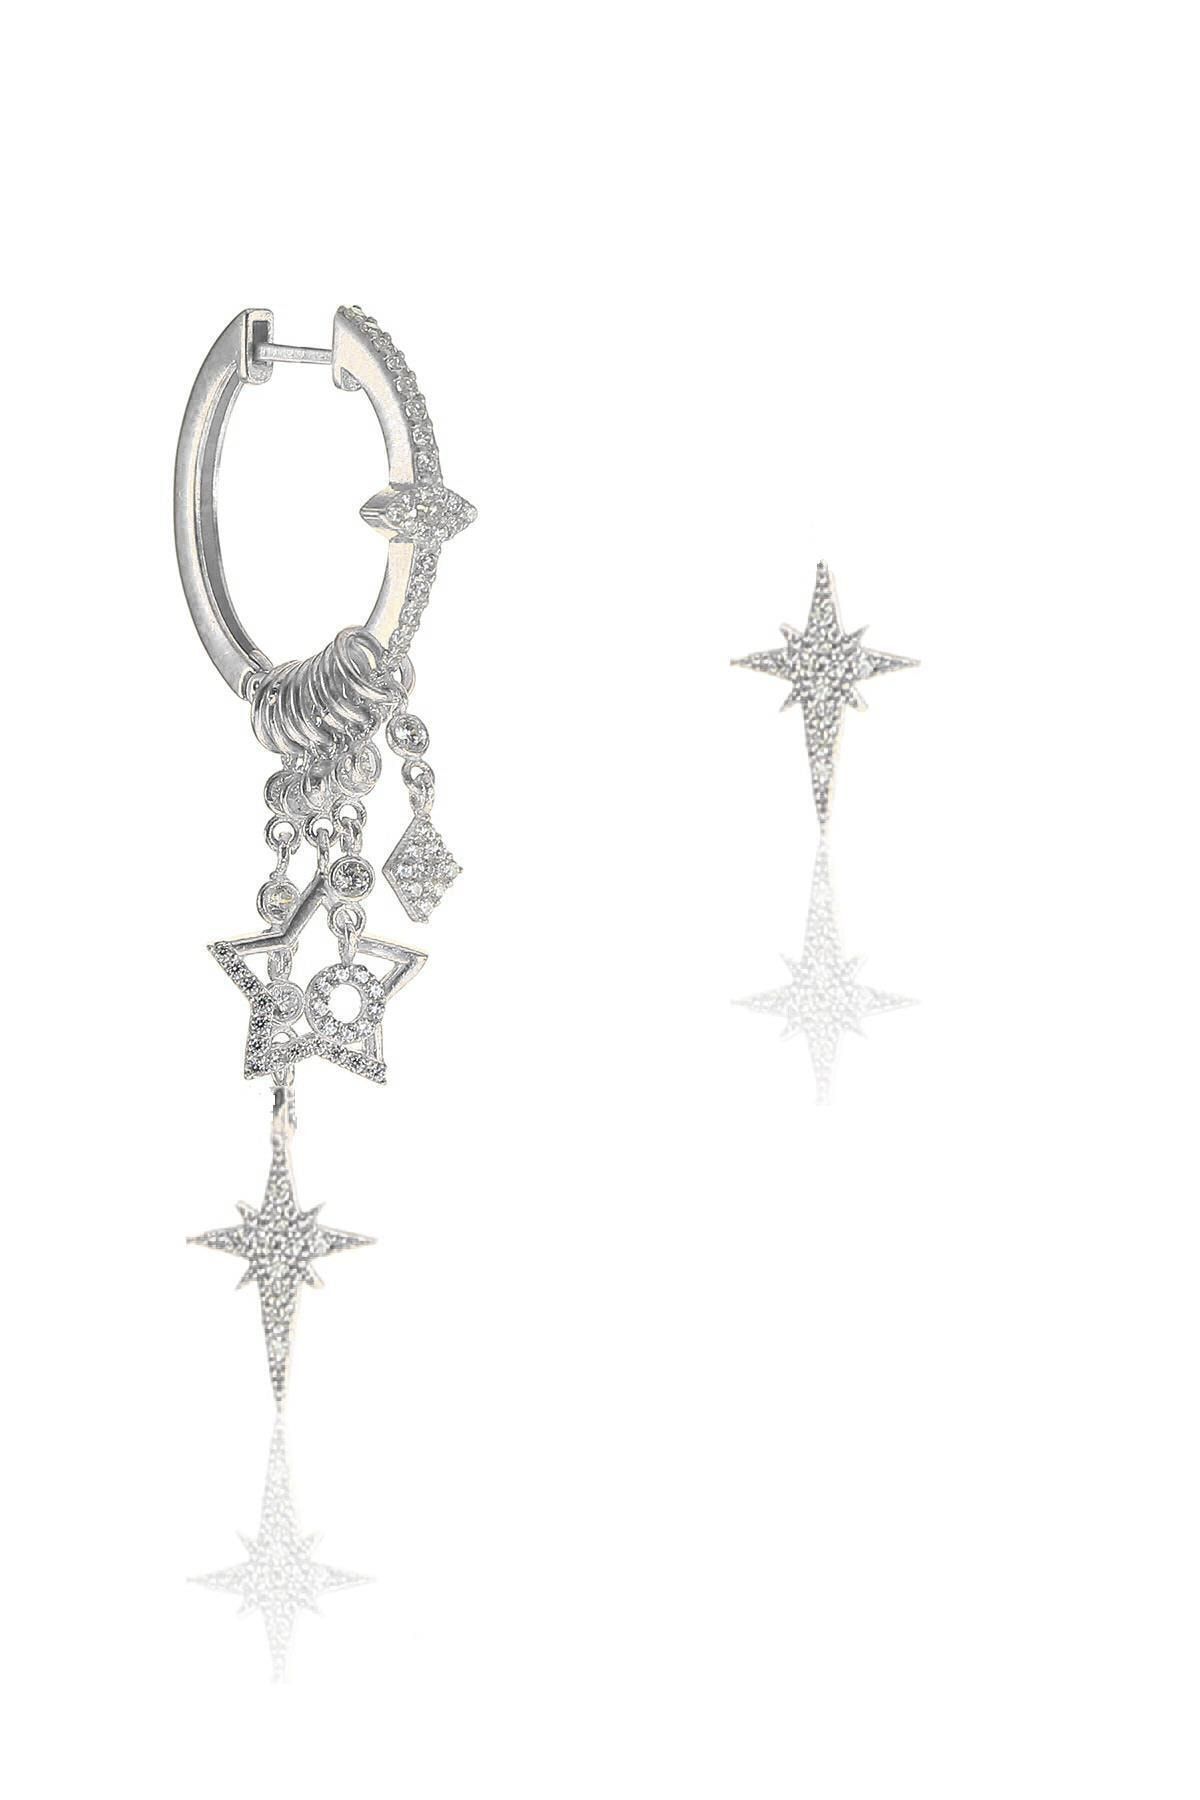 Söğütlü Silver Gümüş Kutup Yıldızı Modeli Şans Küpe